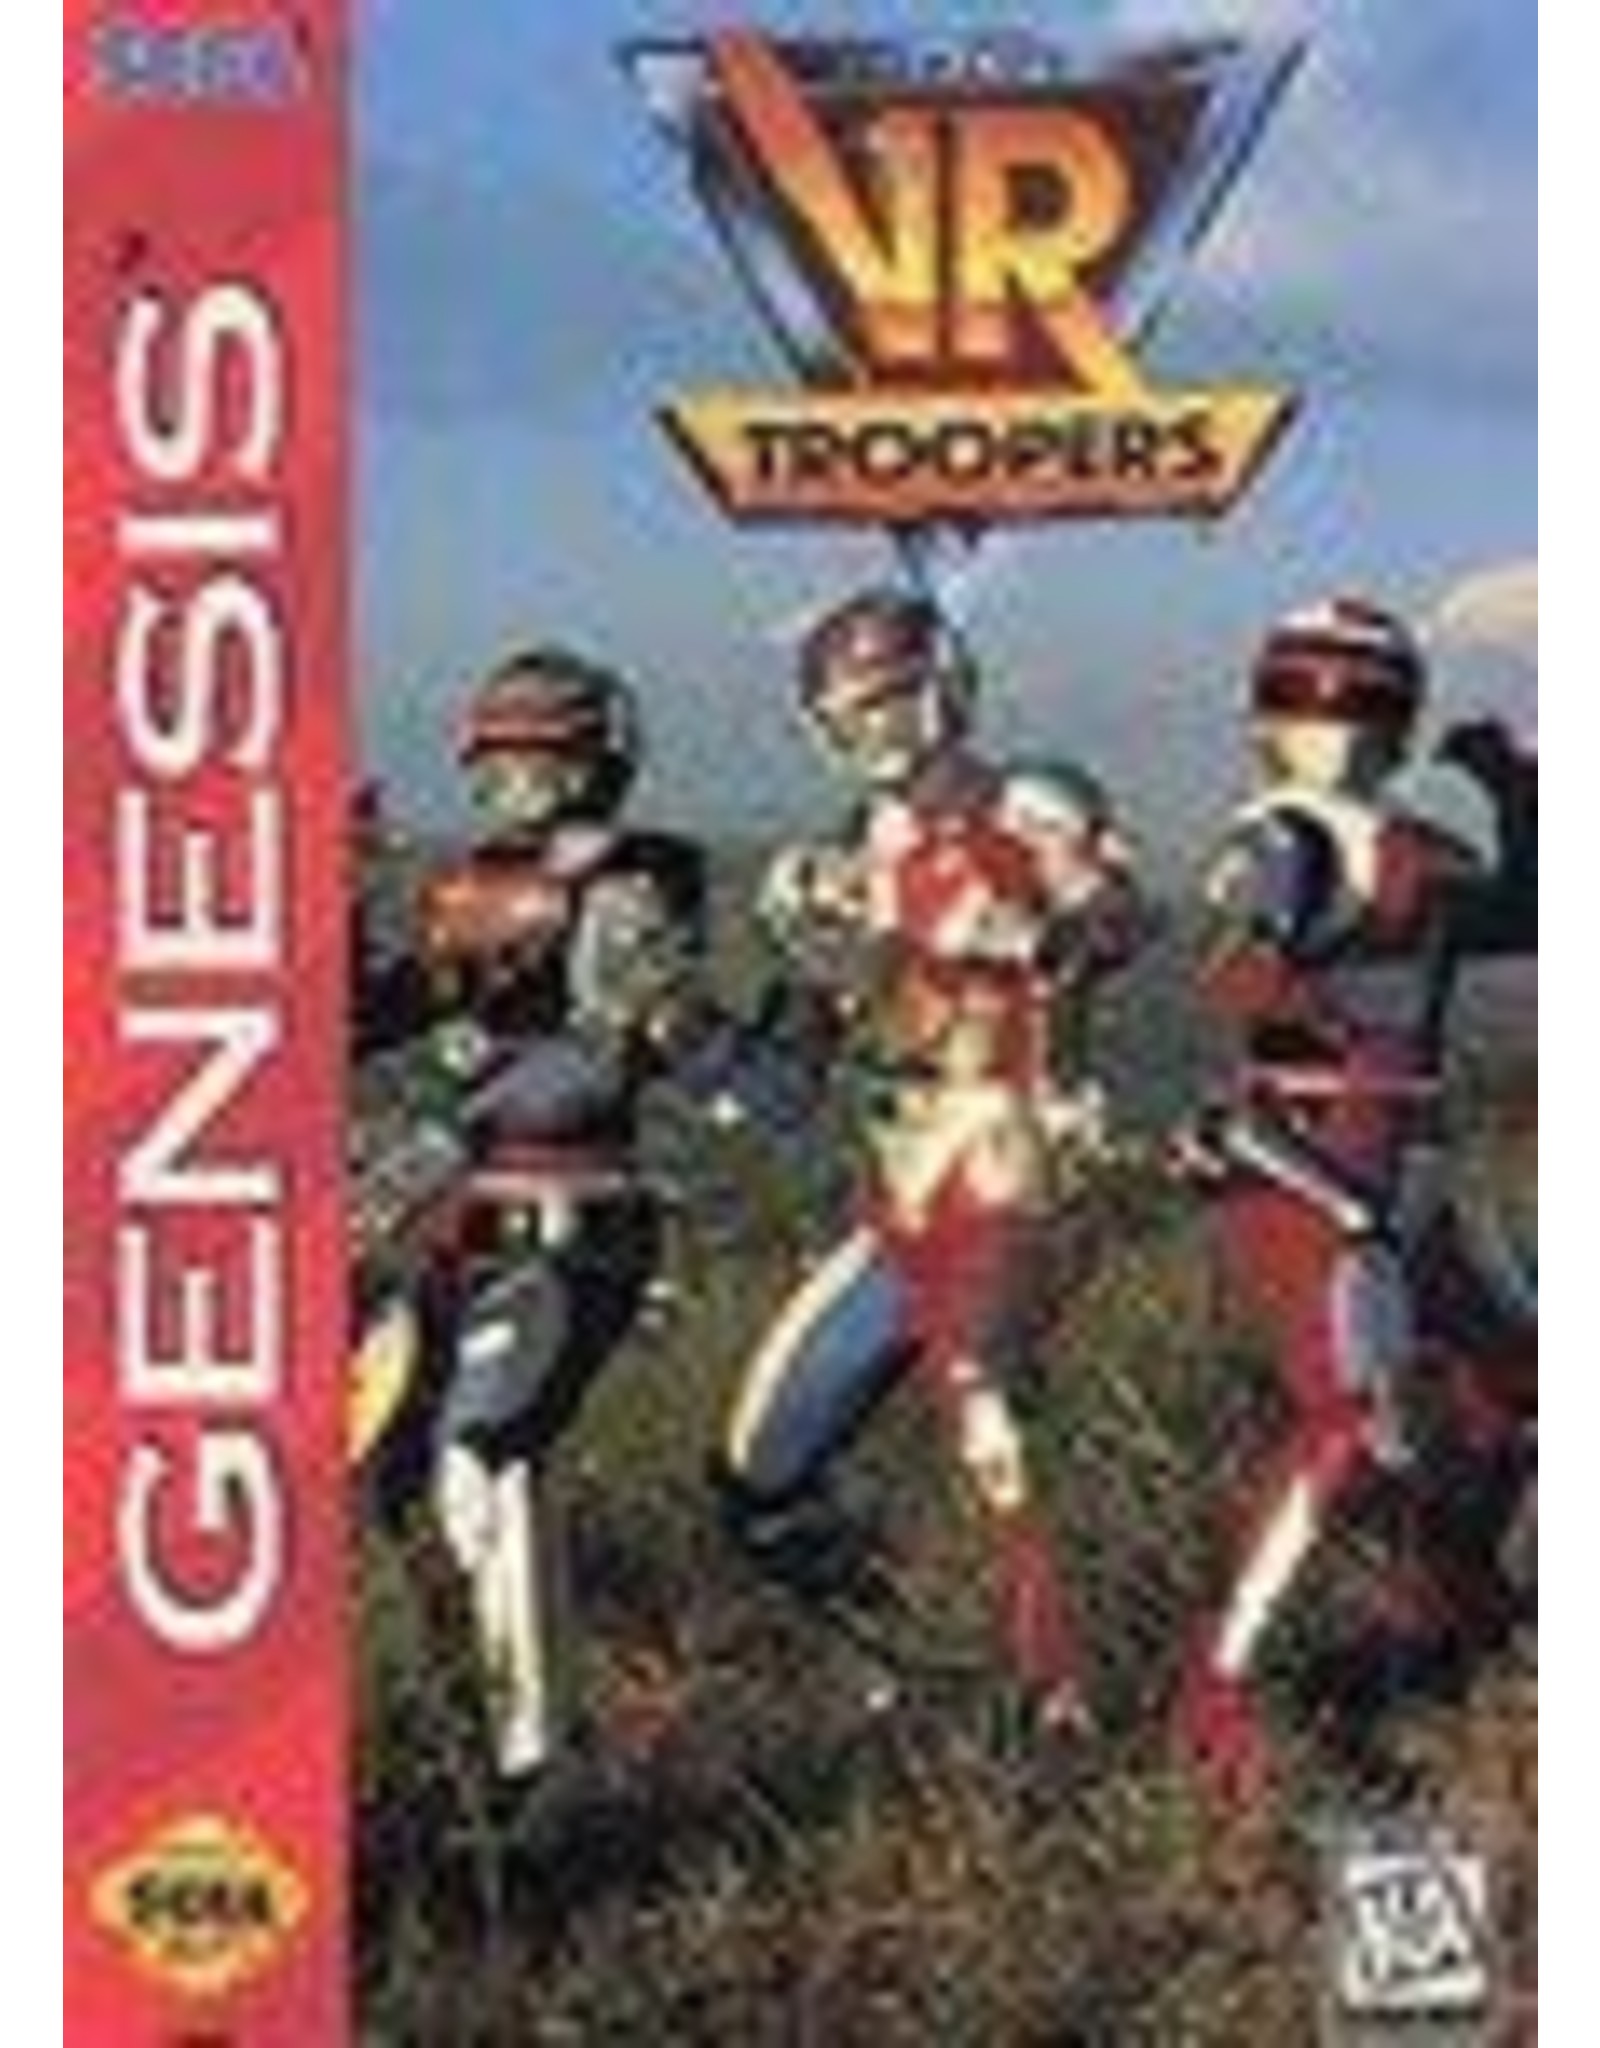 Sega Genesis VR Troopers (Boxed, No Manual)